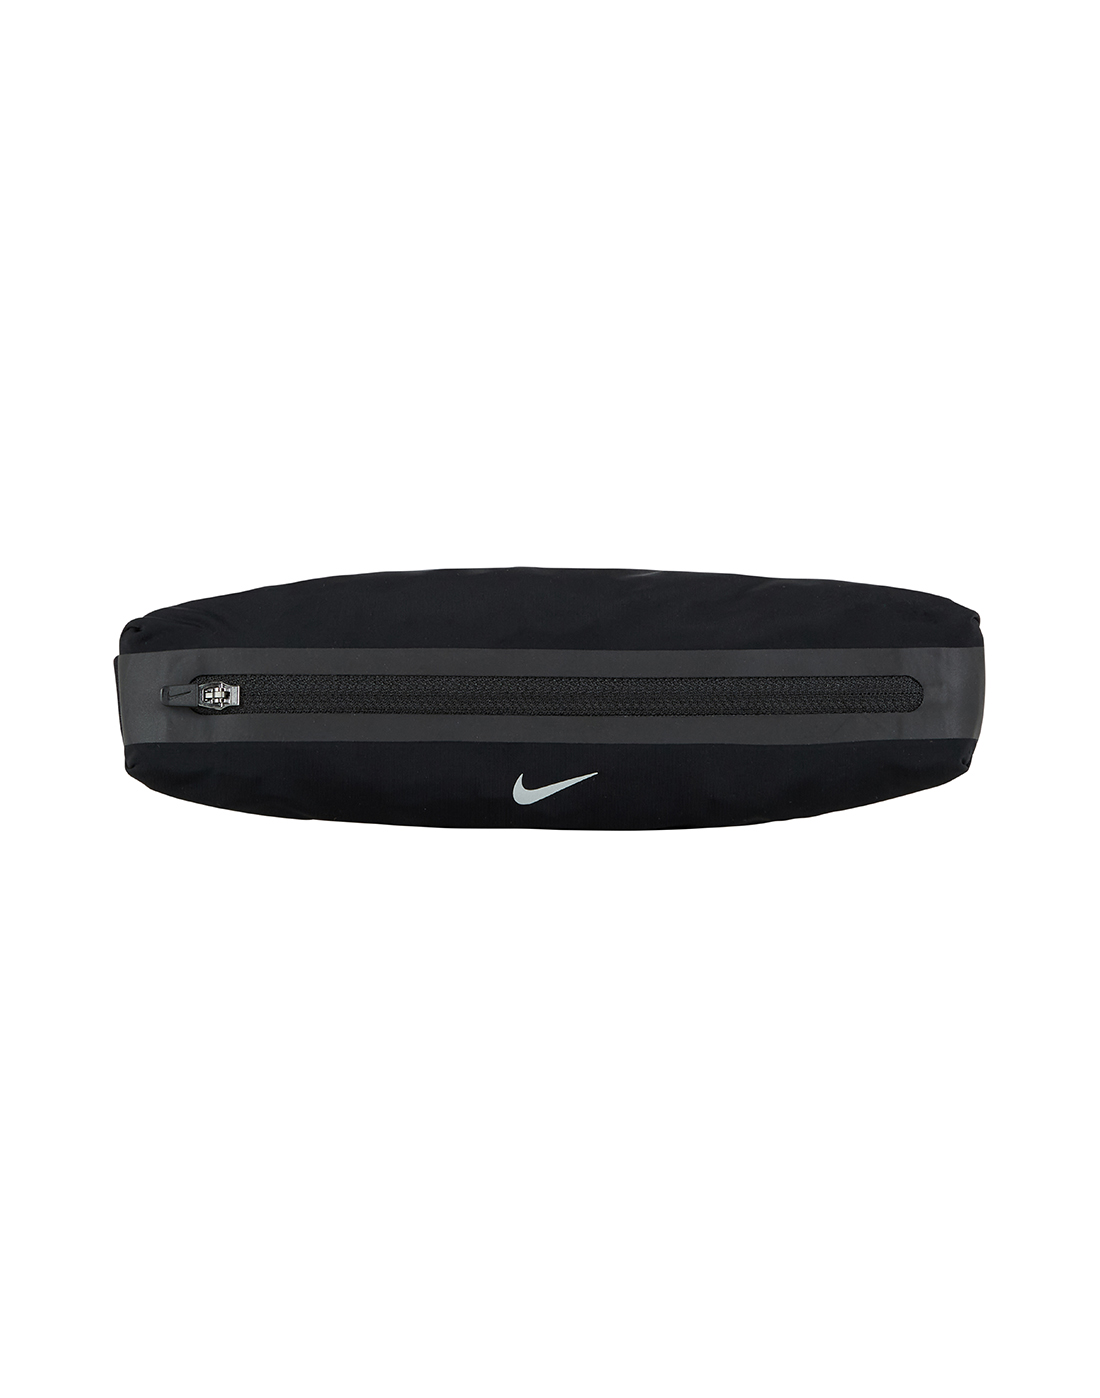 Nike Slim Waistpack 3.0